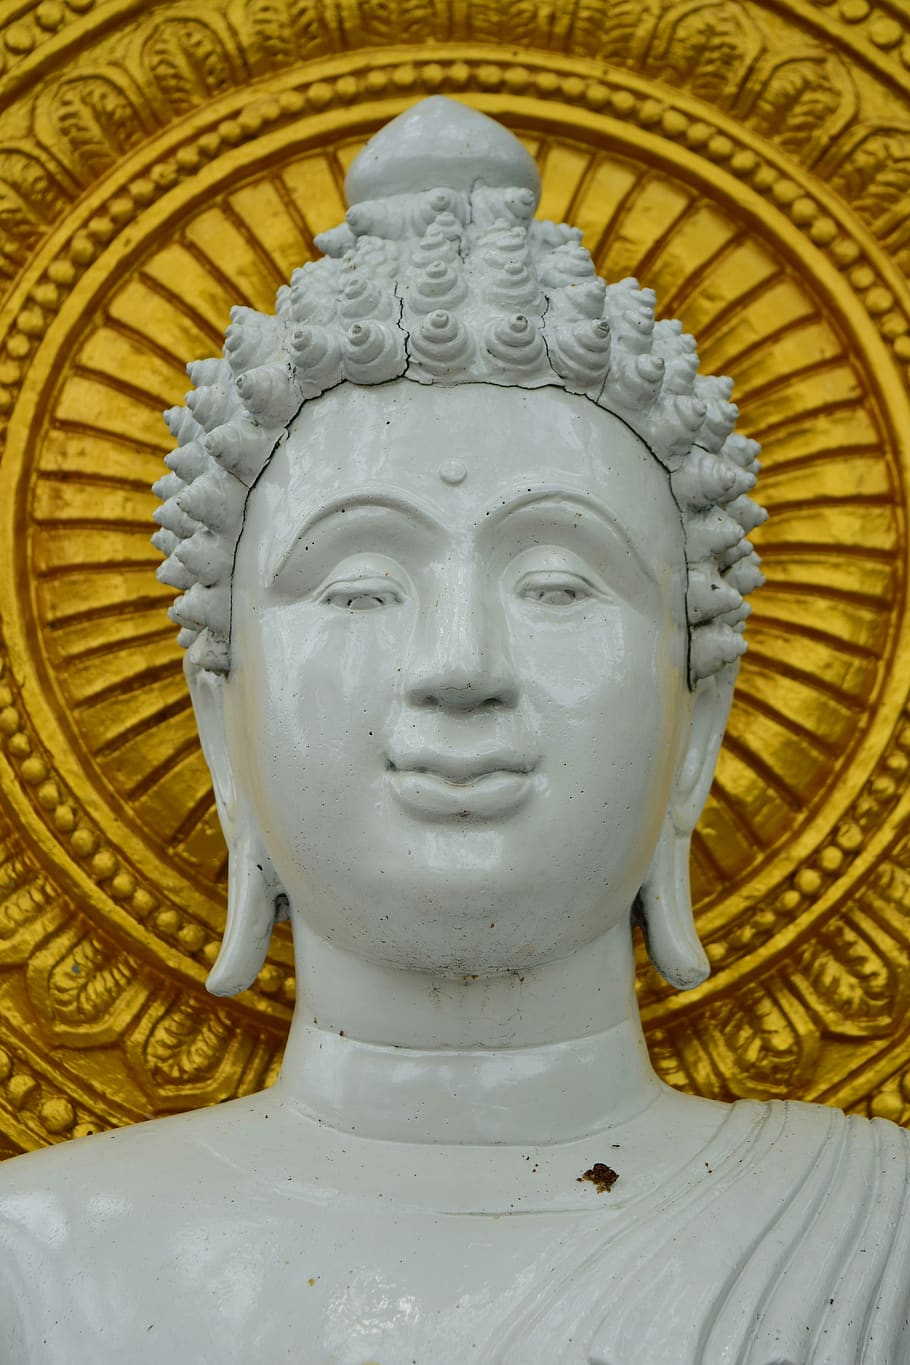 พระ, buddha statue, measure, buddhism, asia, thailand